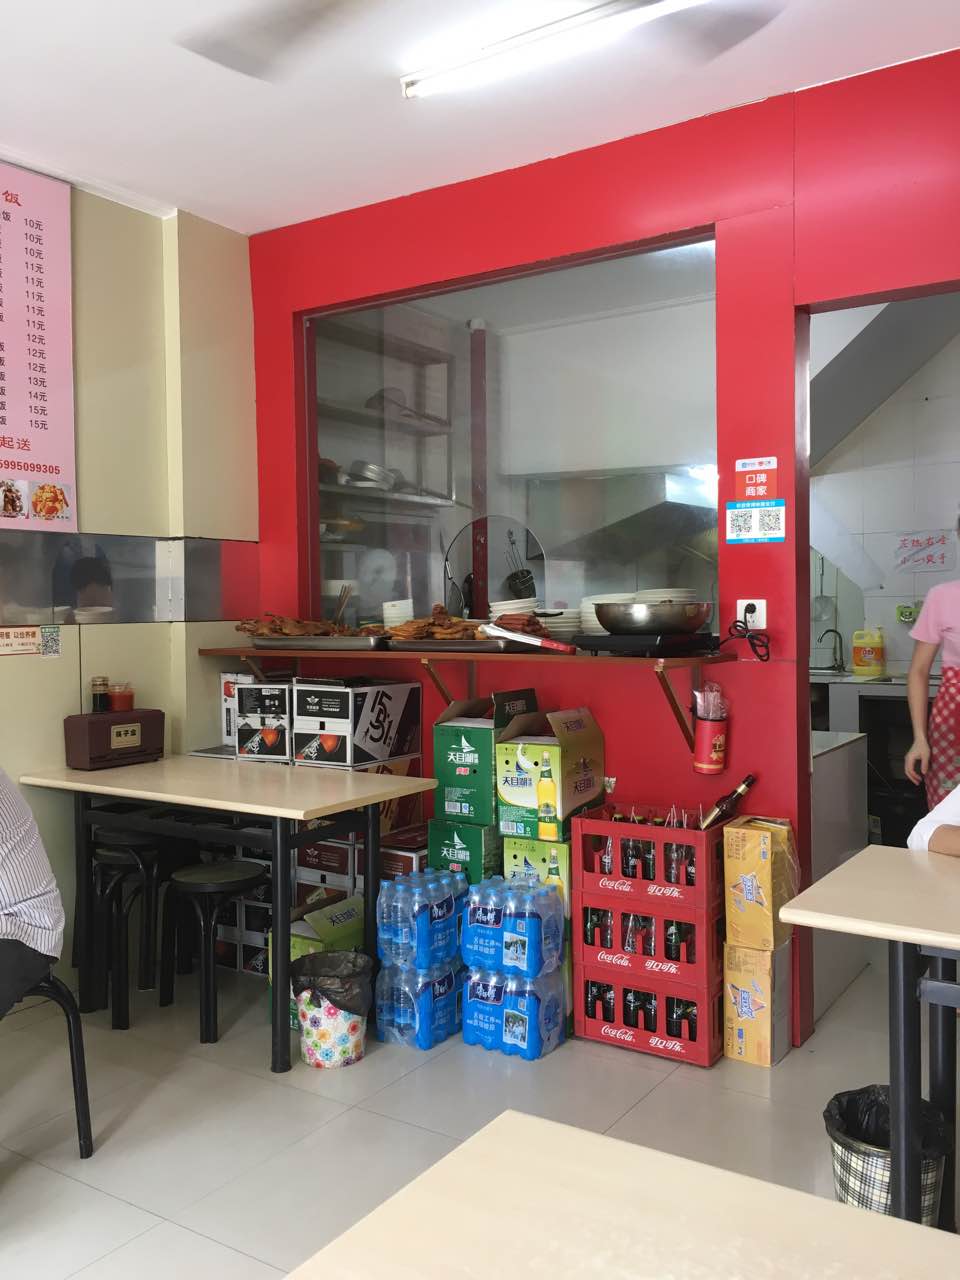 2021沙县小吃(潞城店)美食餐厅,经常吃,价格低,服务好,给